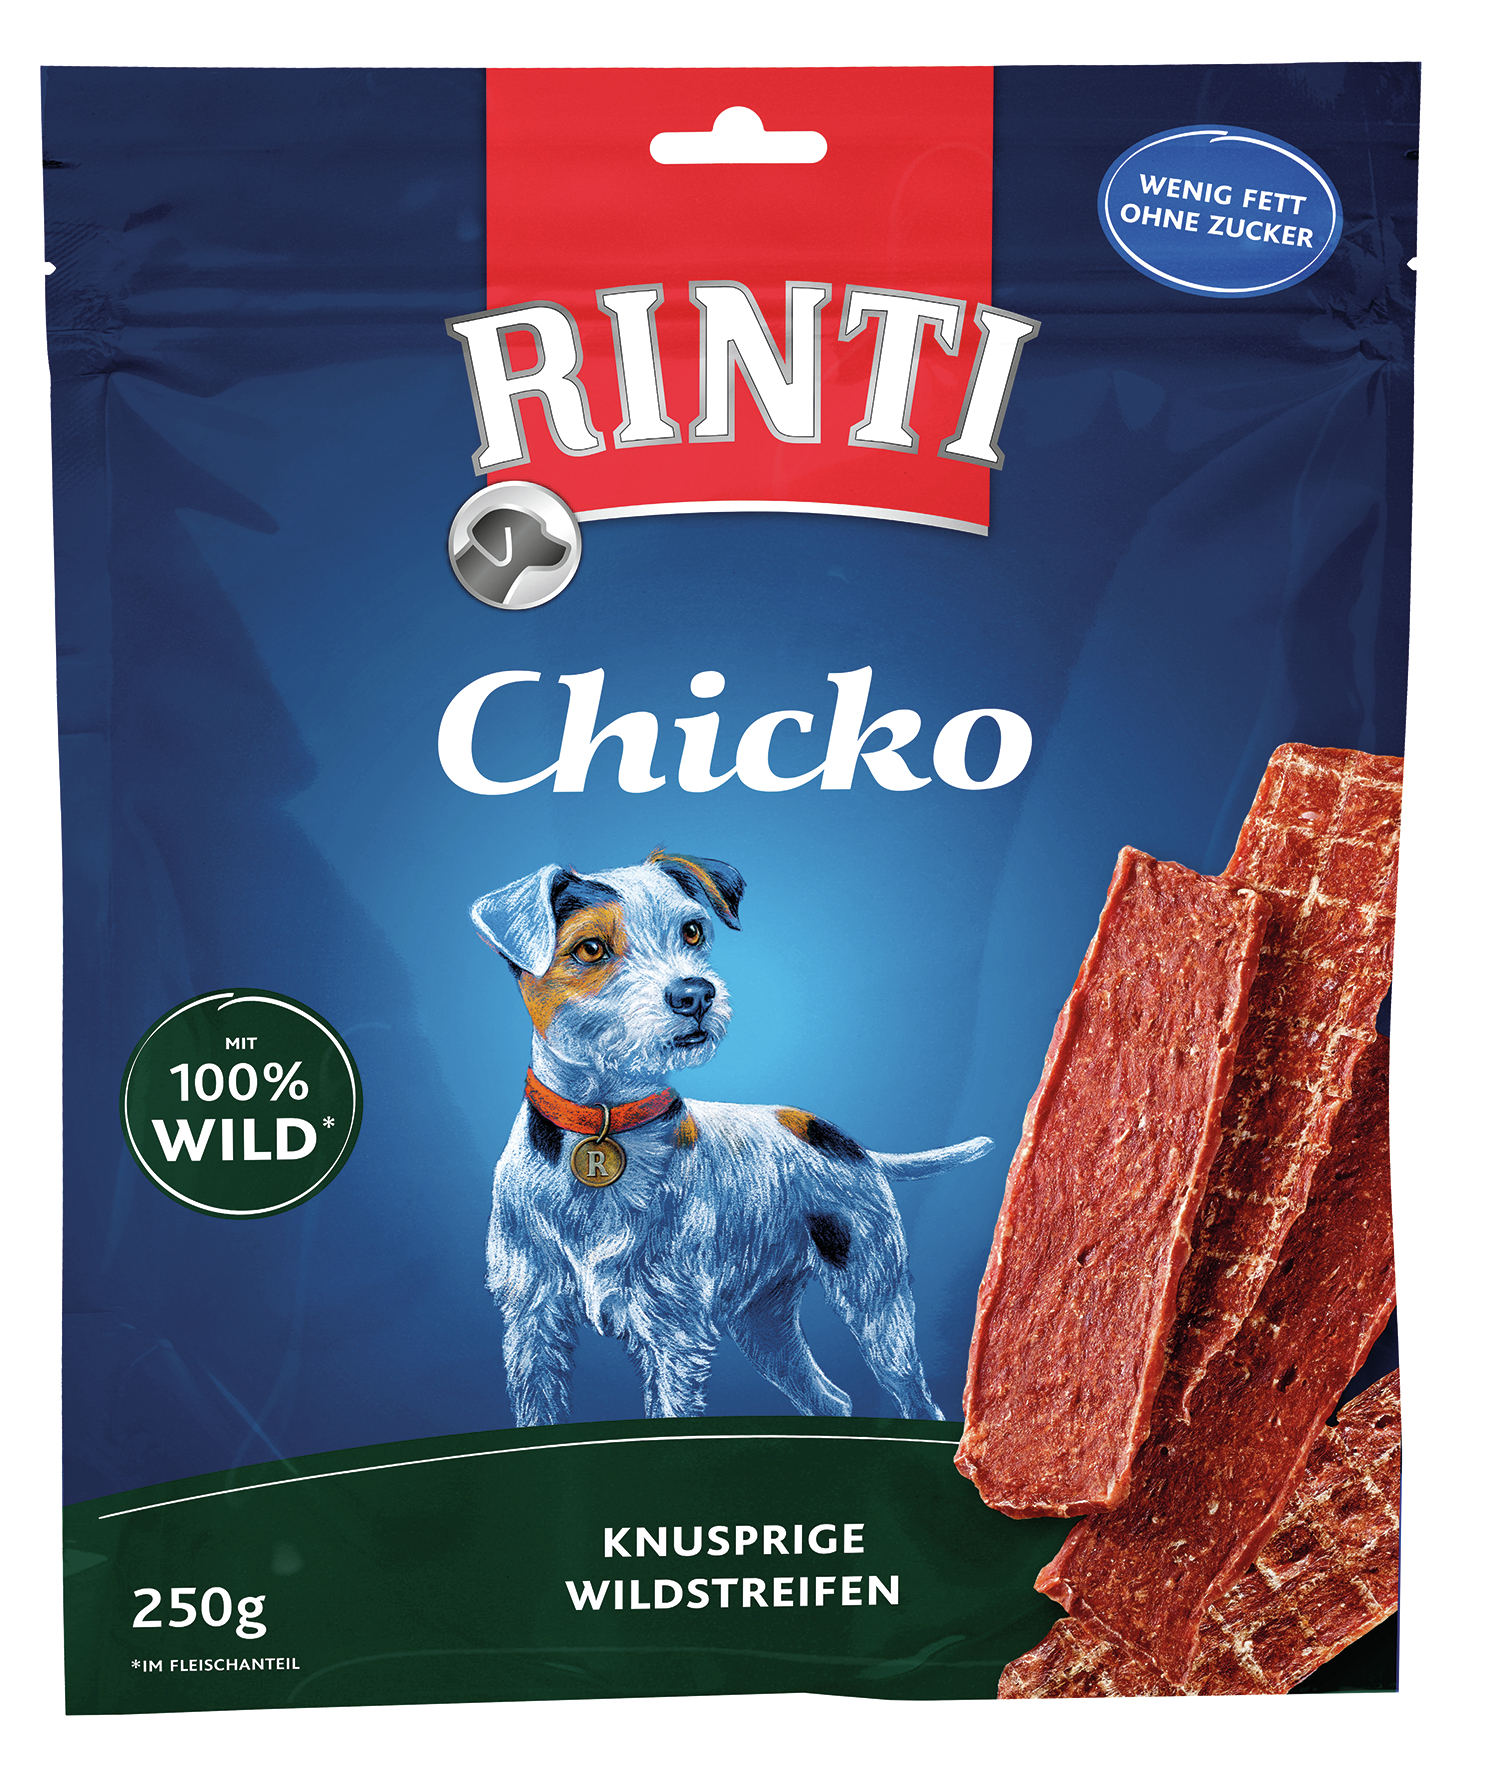 BTG BETEILIGUNGS GMBH Fin Rinti Sn. Chicko Wild 250g Snack